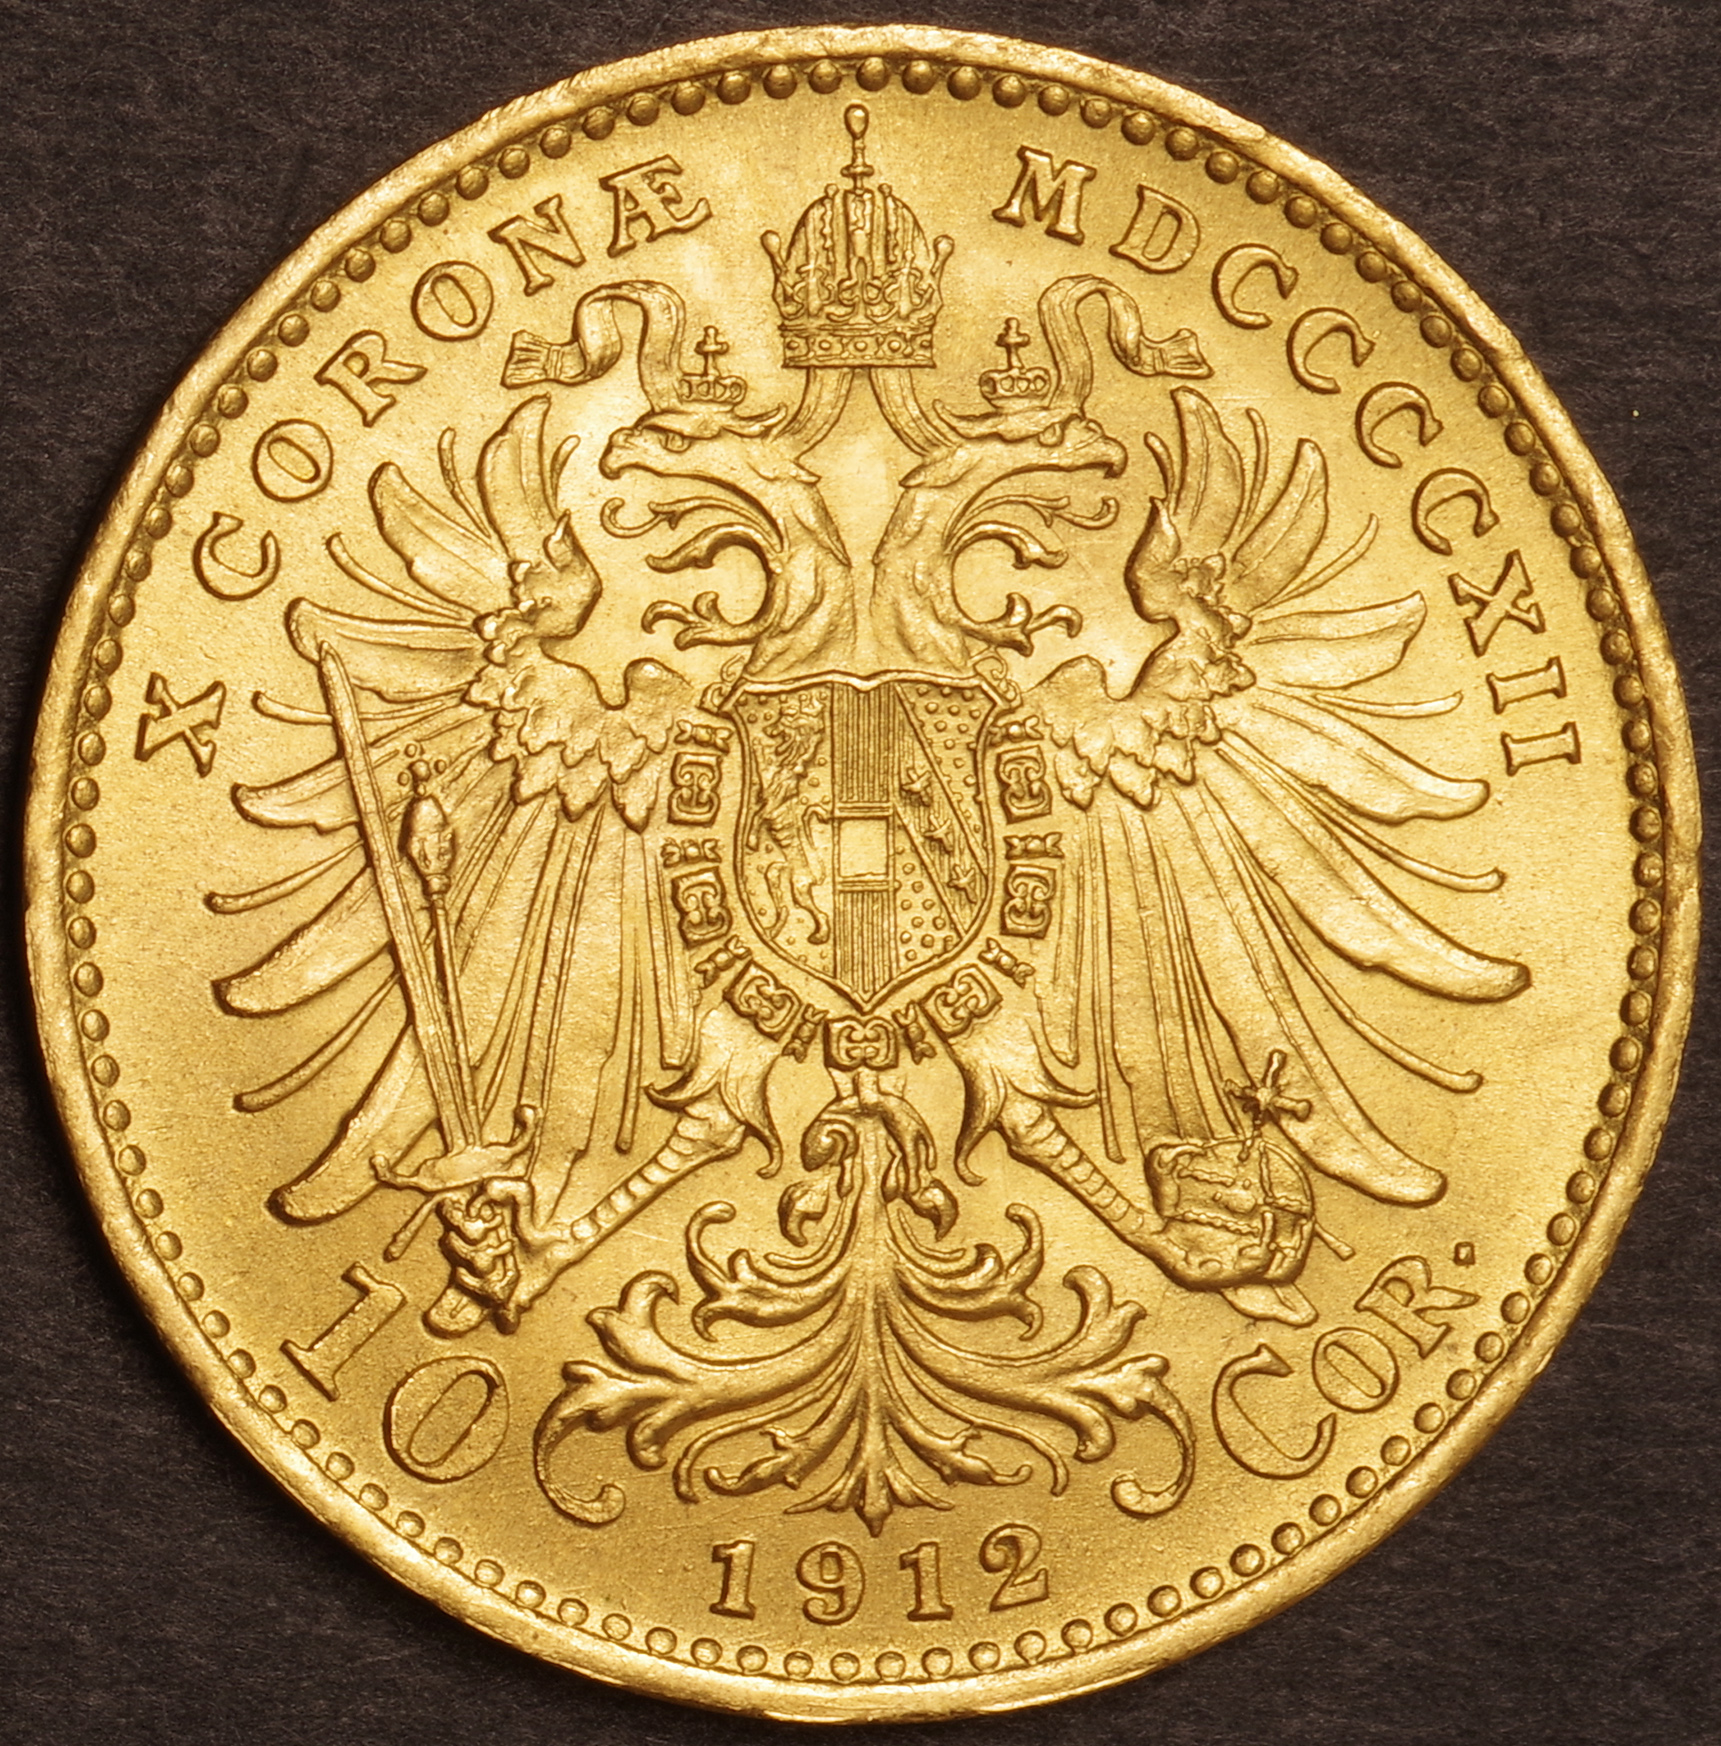 Austria-オーストリア フランツ・ヨーゼフ1世像 10コロナ金貨(再鋳貨 